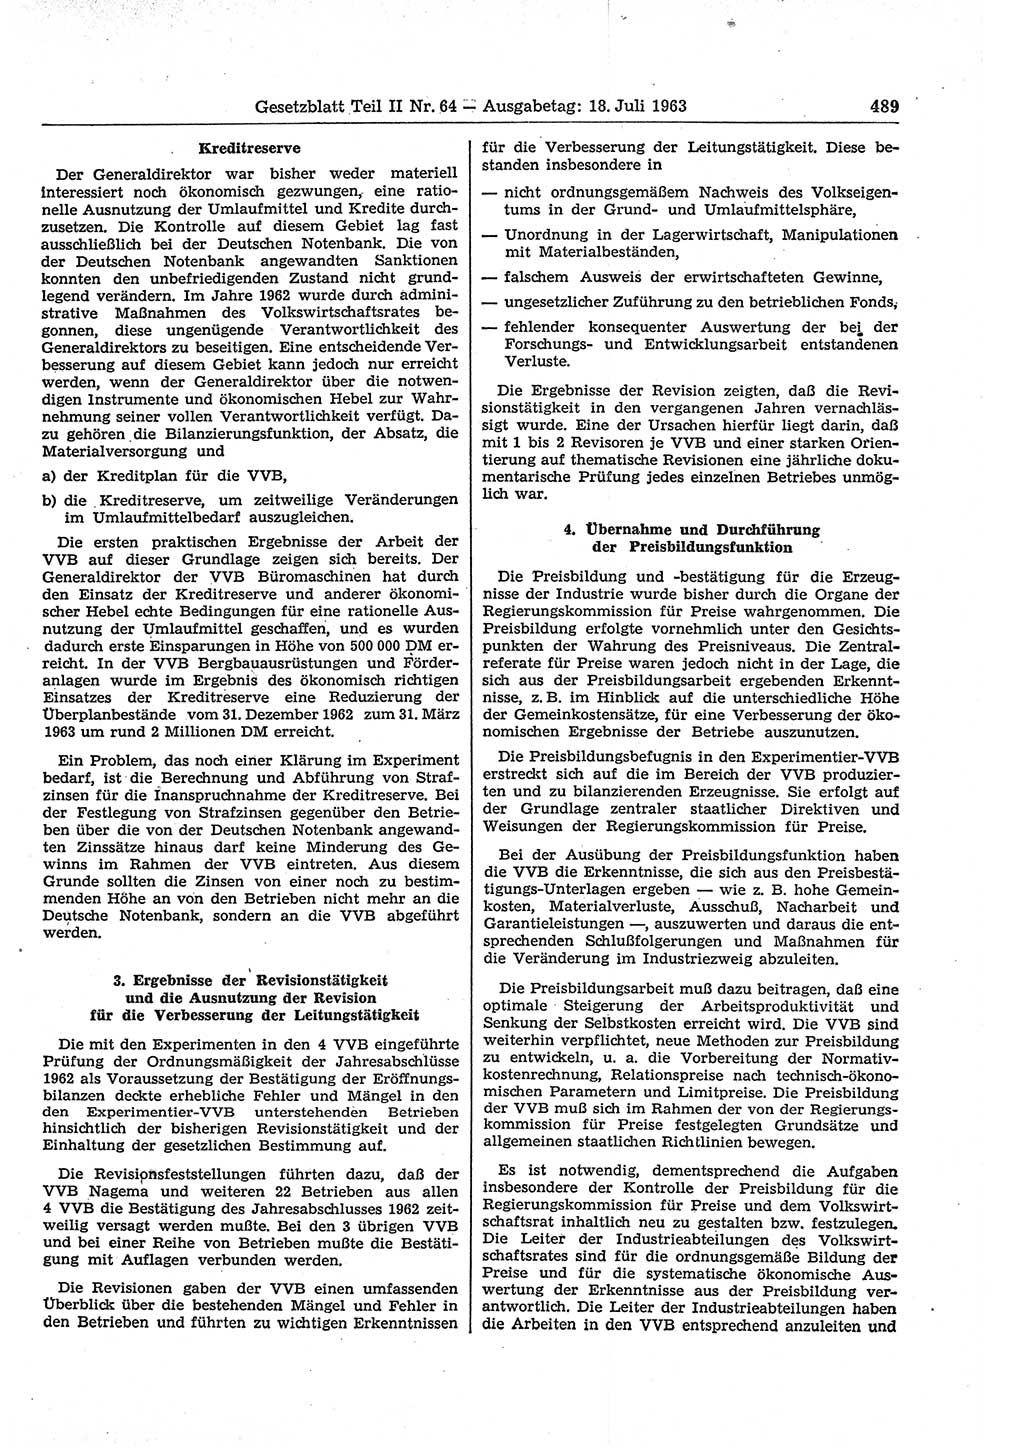 Gesetzblatt (GBl.) der Deutschen Demokratischen Republik (DDR) Teil ⅠⅠ 1963, Seite 489 (GBl. DDR ⅠⅠ 1963, S. 489)